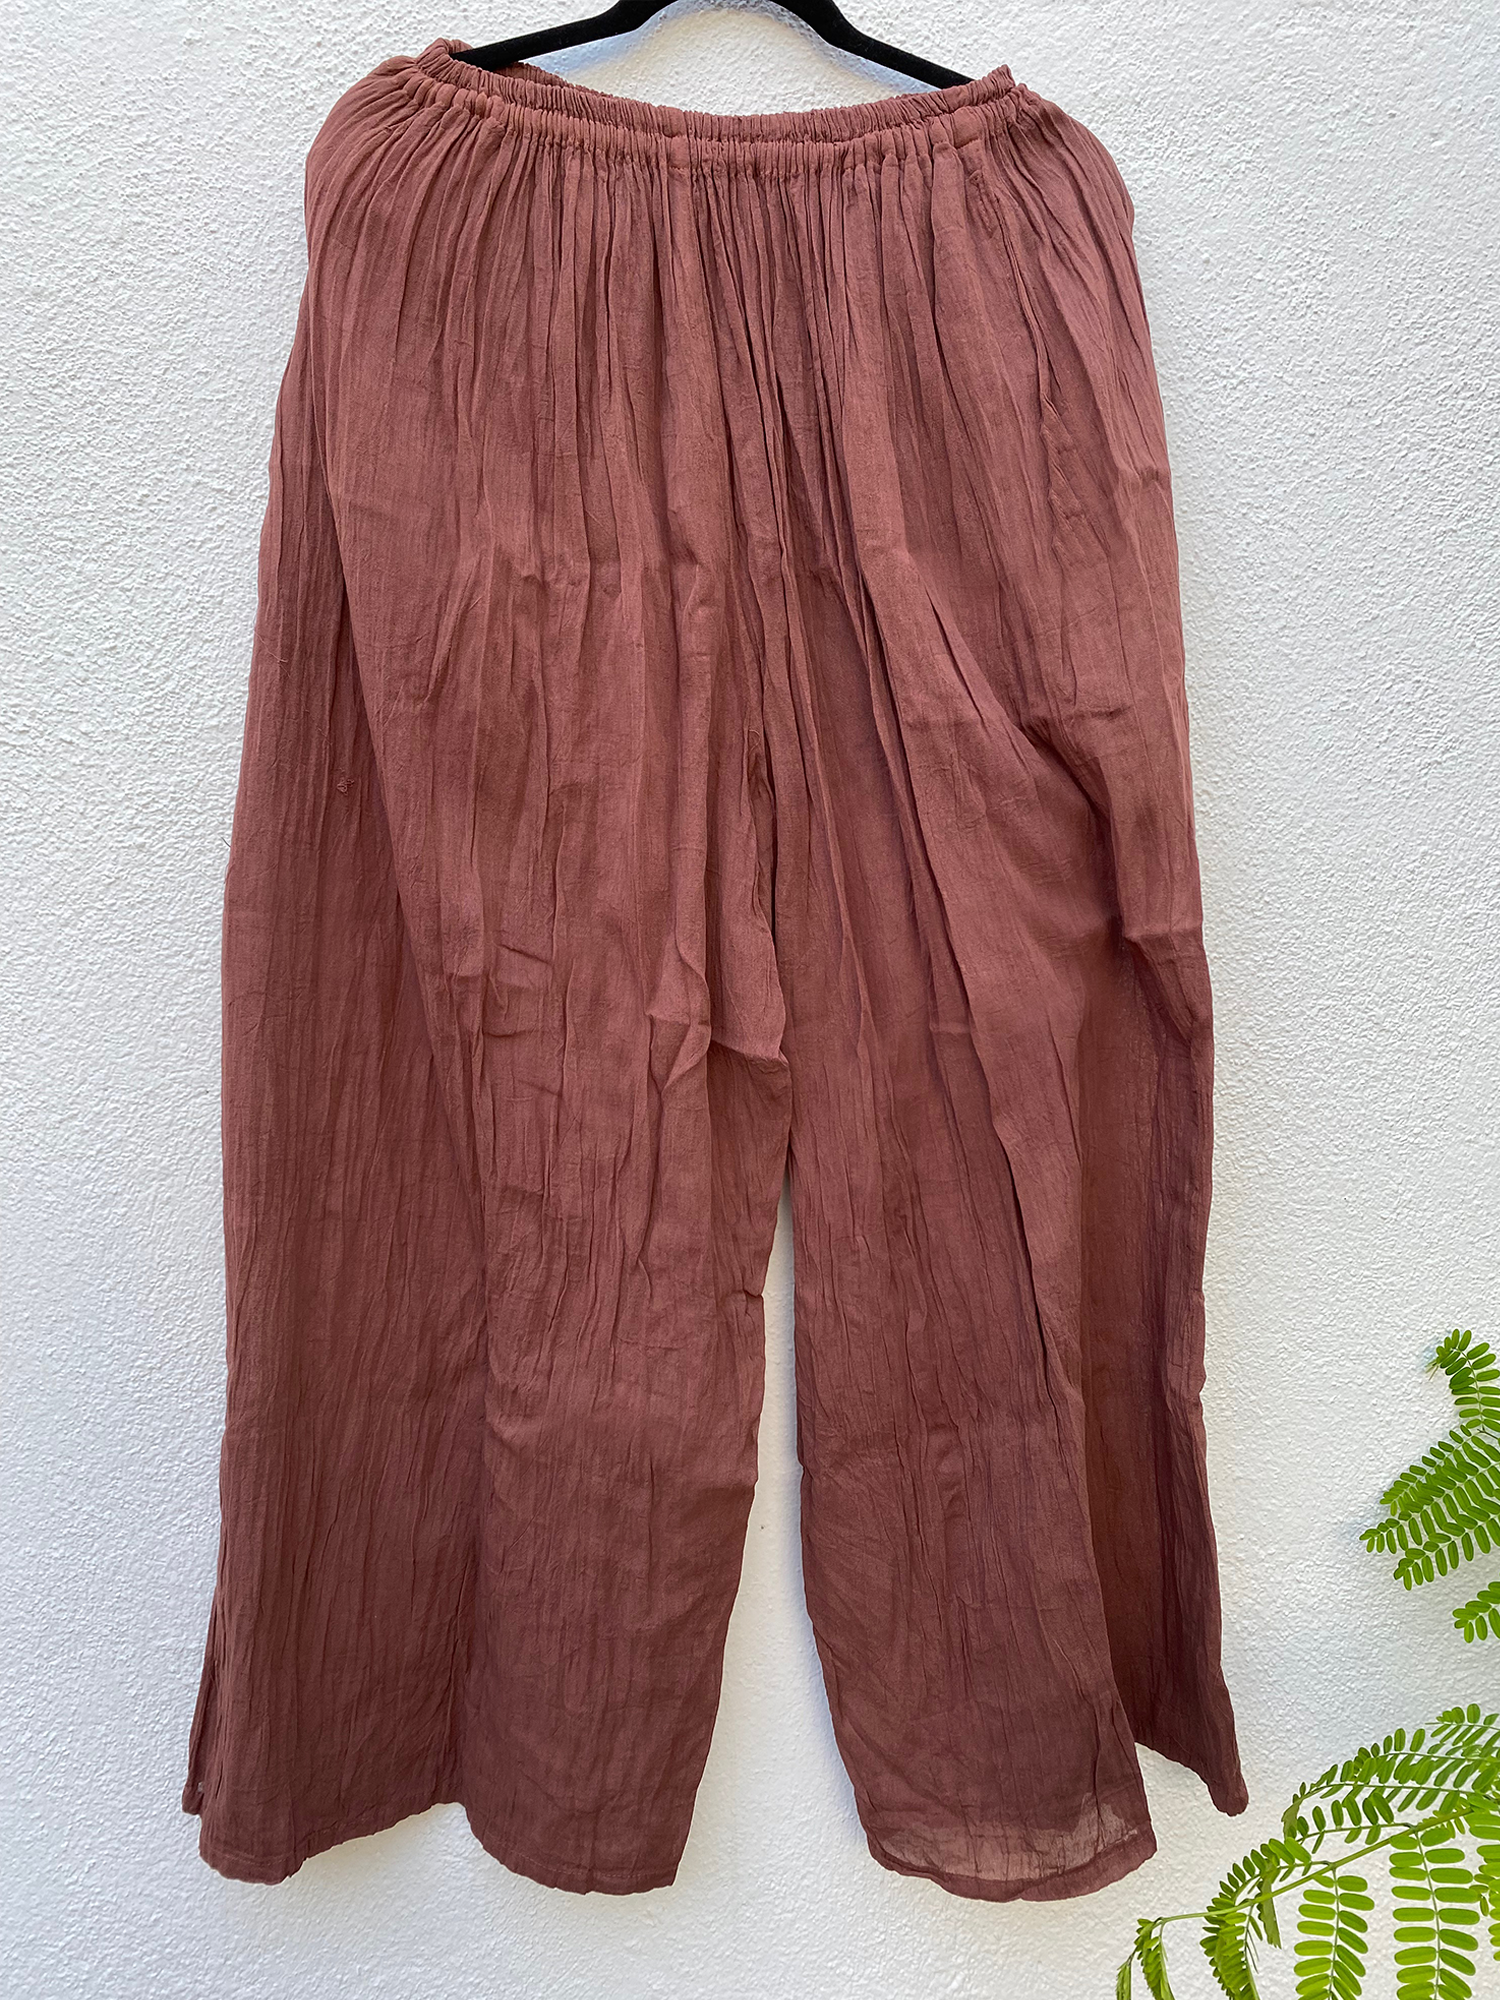 Pantalón de manta COLOR capuchino / Unitalla